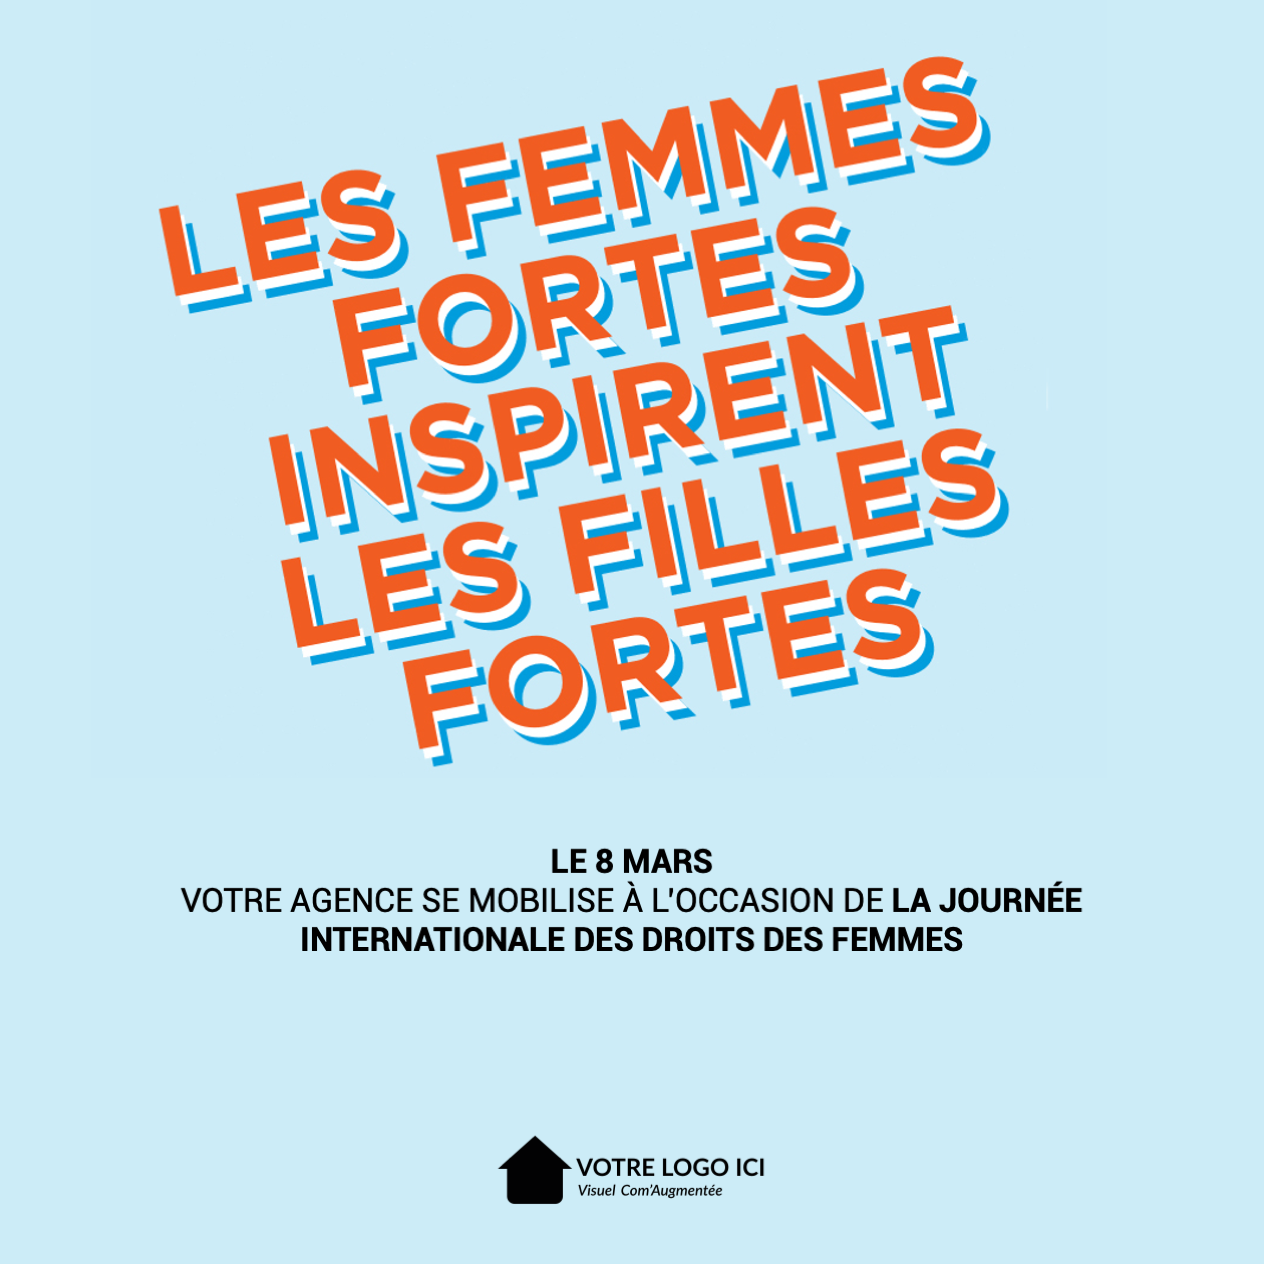 Journée Internationale Des Droits De La Femme Comaugmentee Communication Immobilier